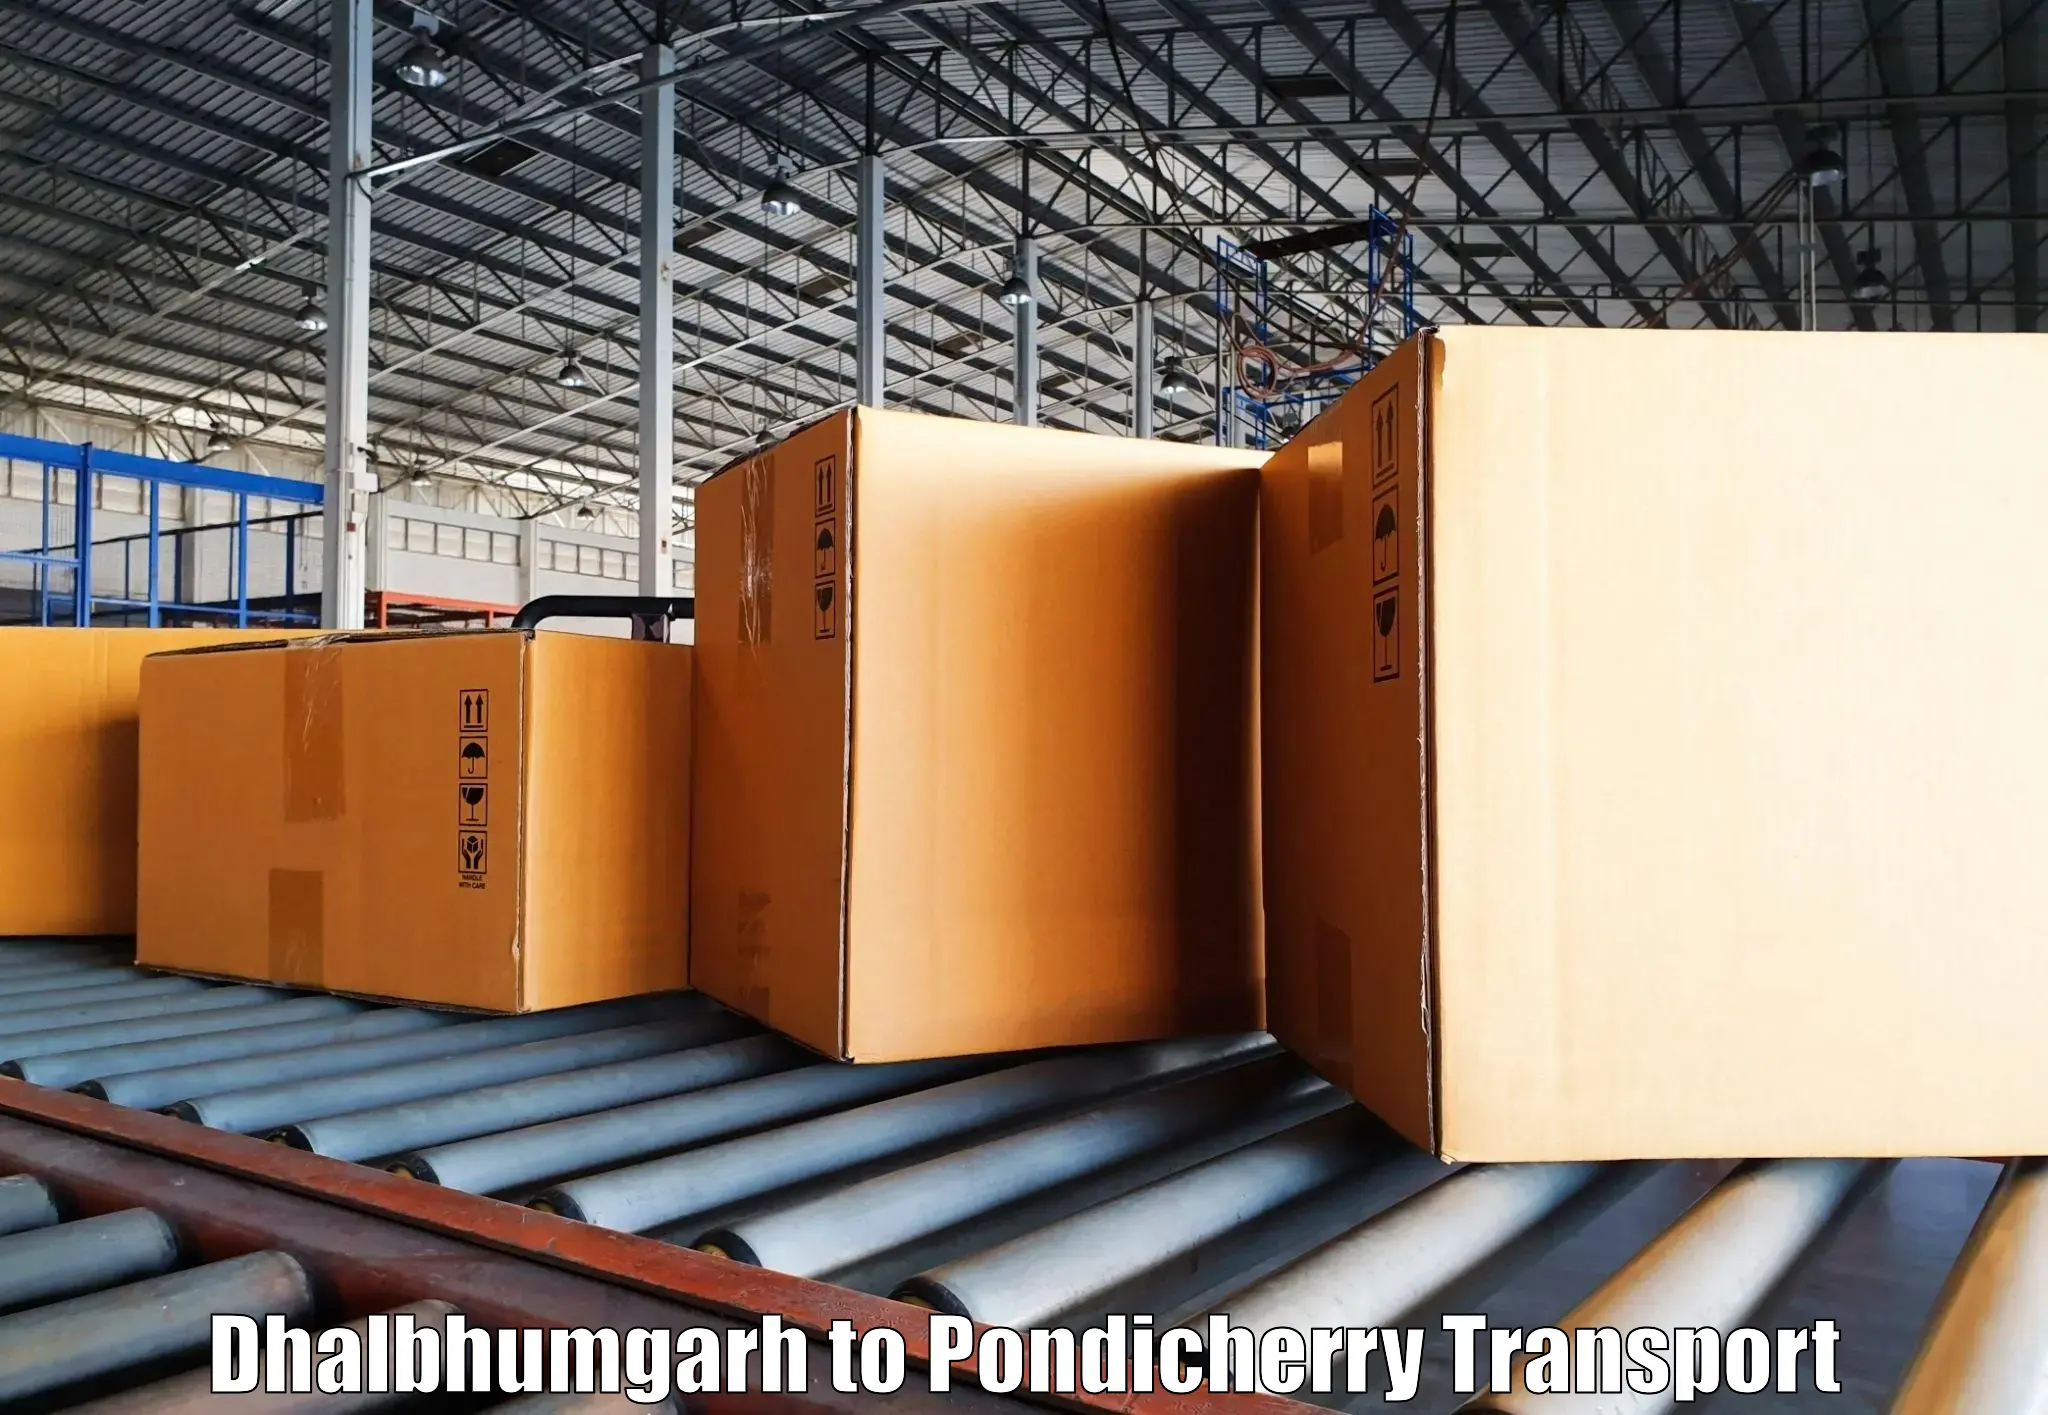 International cargo transportation services Dhalbhumgarh to Pondicherry University